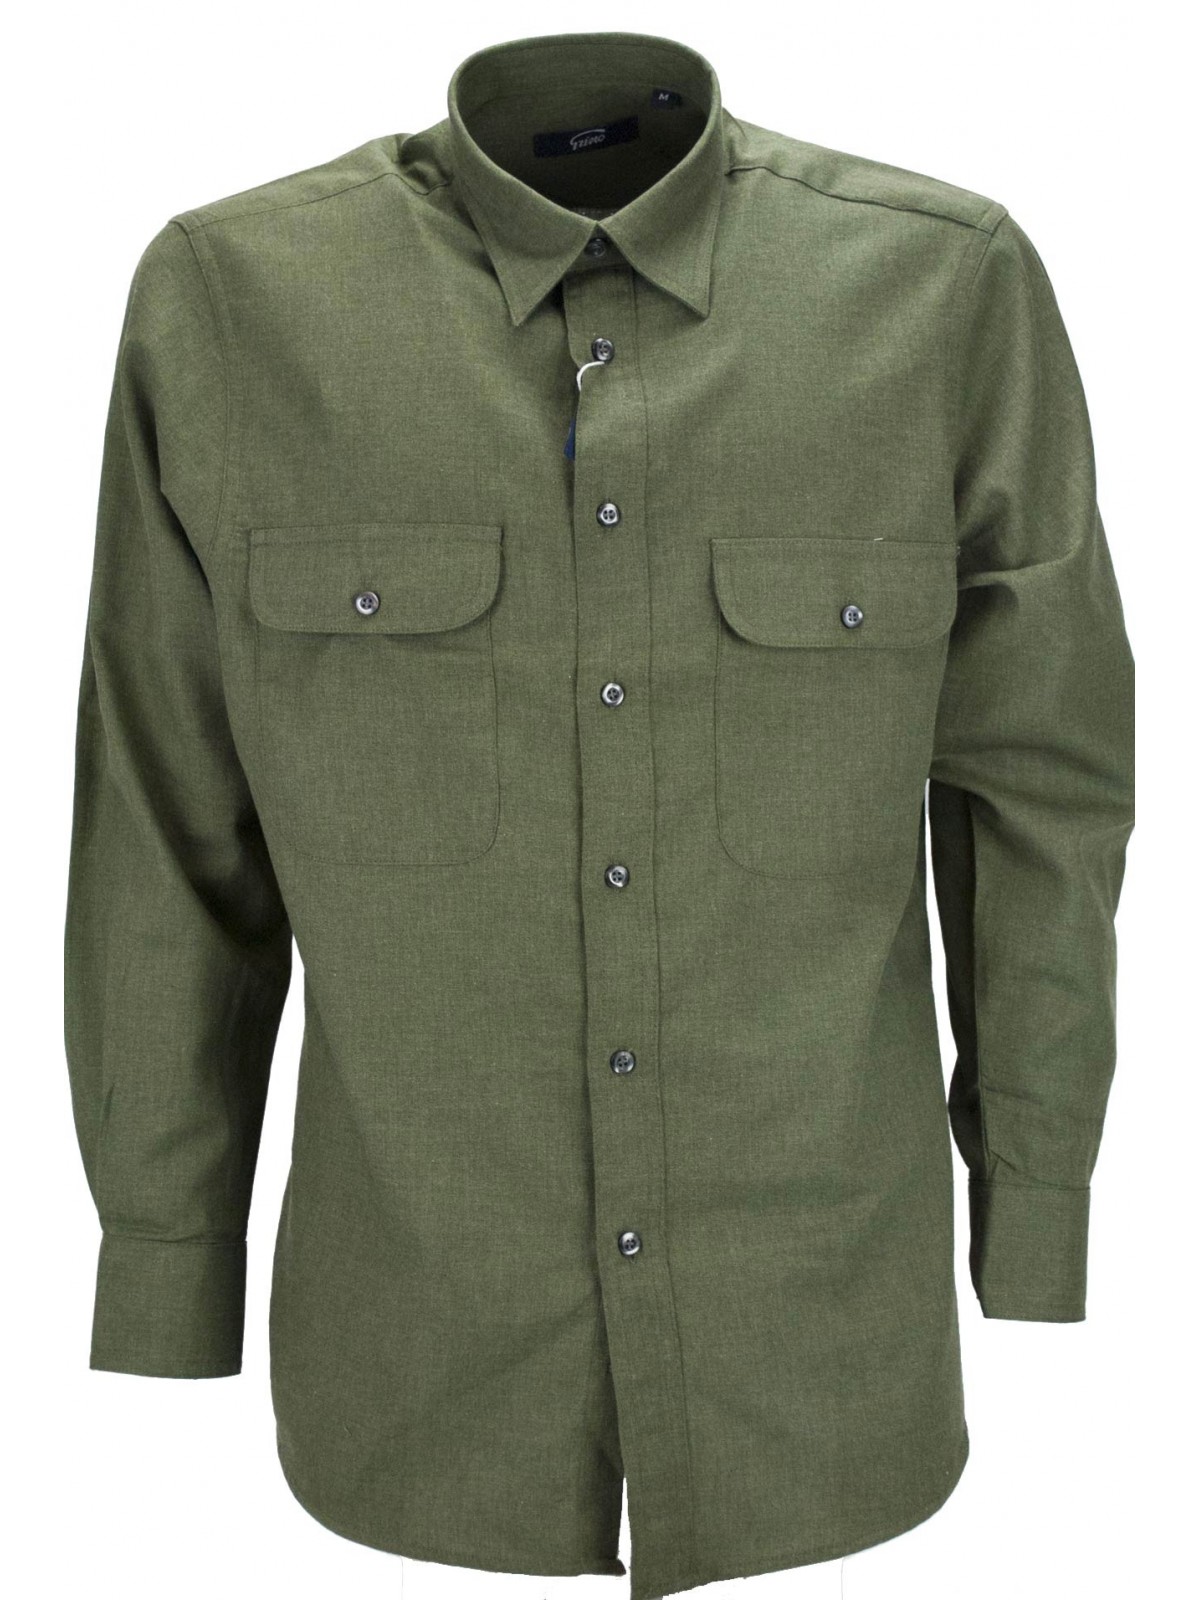 Camicia Uomo Classica Verde Militare Tintaunita Flanella Leggera - Grino